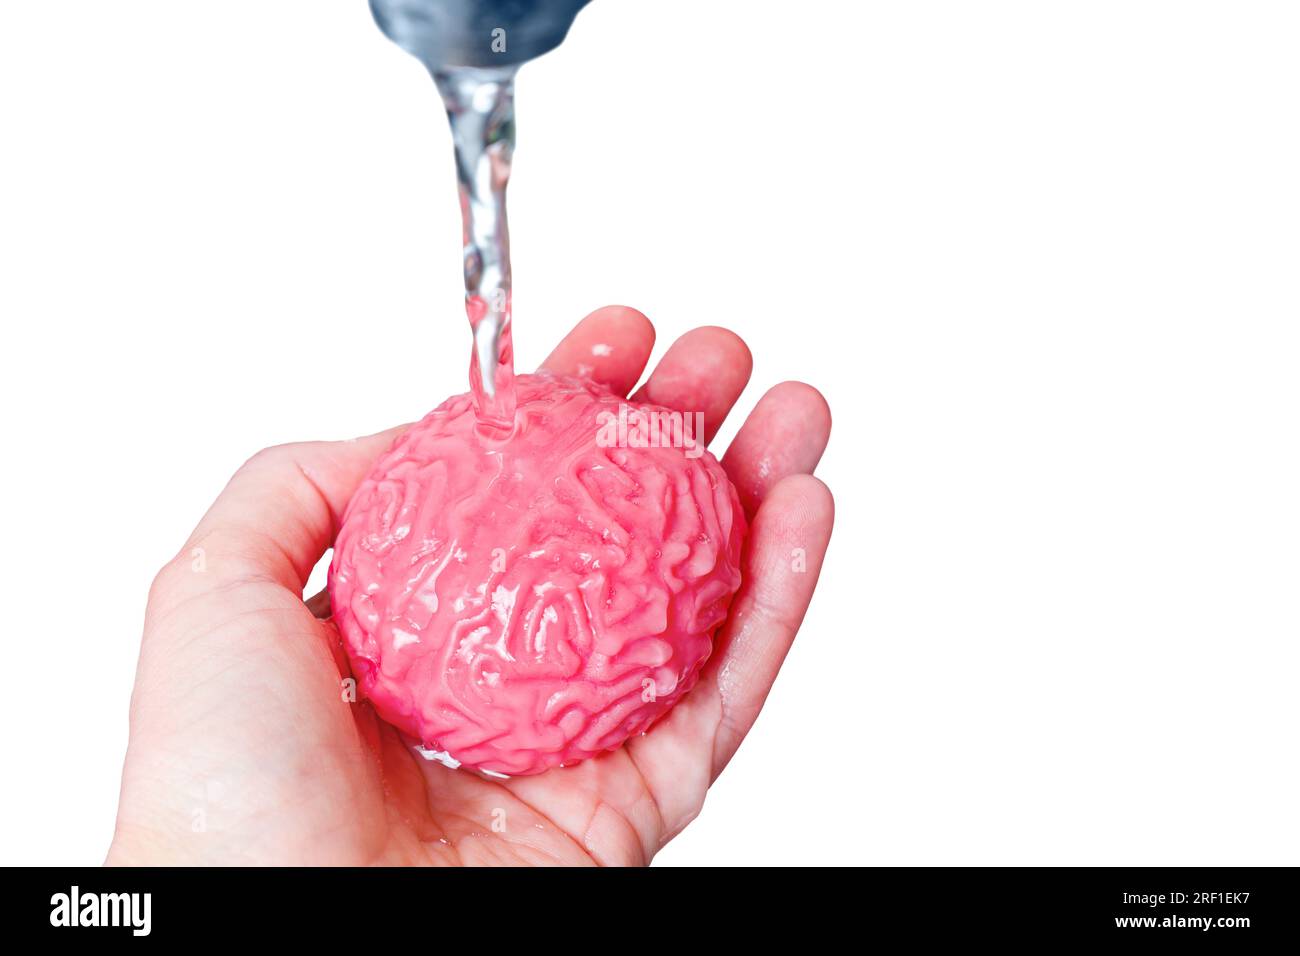 Das gelee-ähnliche Modell des menschlichen Gehirns, das unter einem stetigen Wasserstrahl aus einem Wasserhahn gespült wird. Psychohygiene, Selbstfürsorge, Achtsamkeit und das Streben Stockfoto